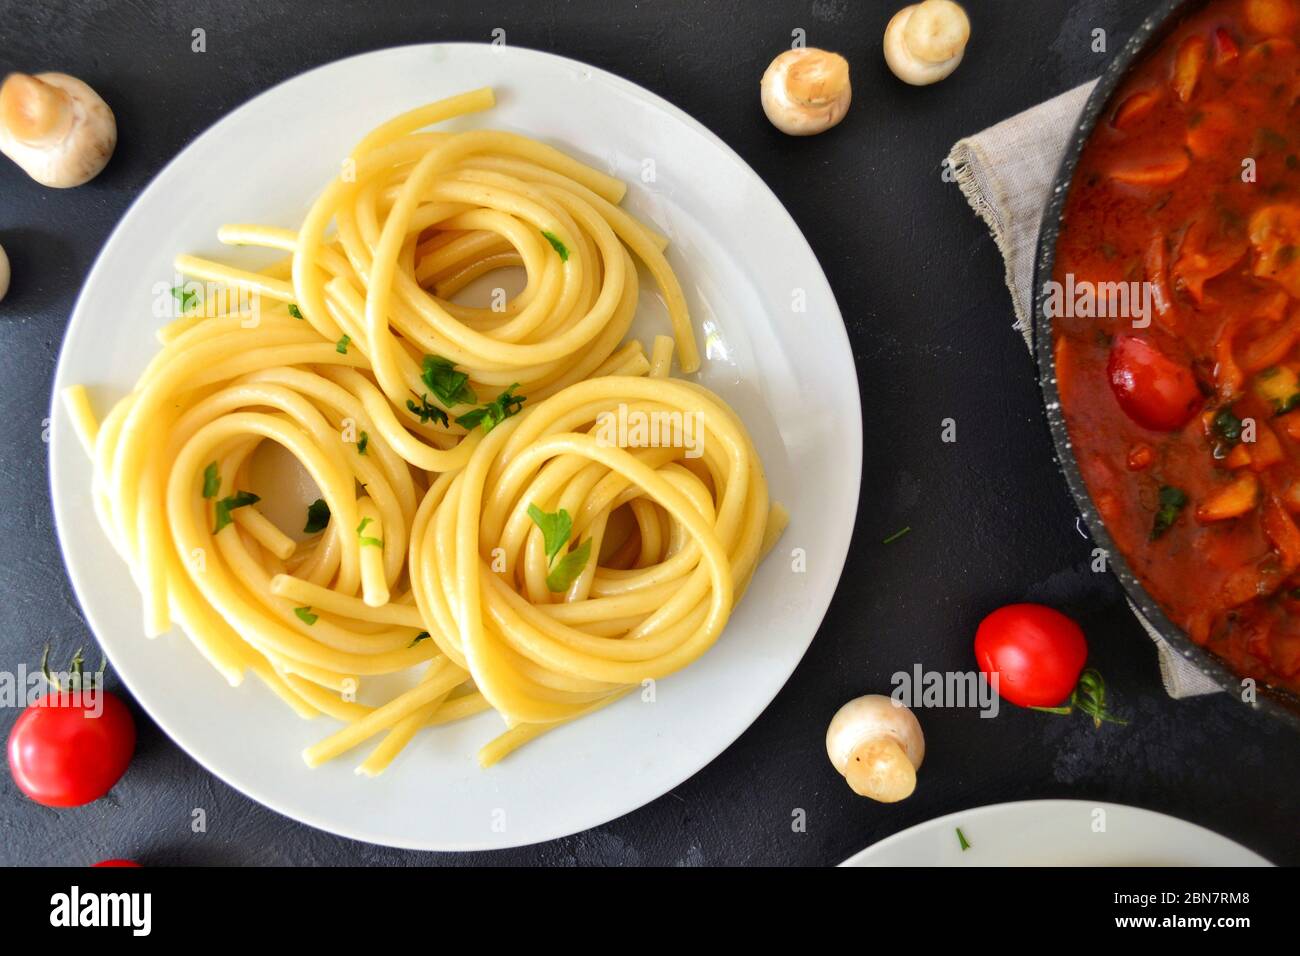 Pâtes dans une assiette blanche sur fond sombre. Spaghetti appétissants avec tomates et champignons. Vue de dessus de la nourriture. Banque D'Images